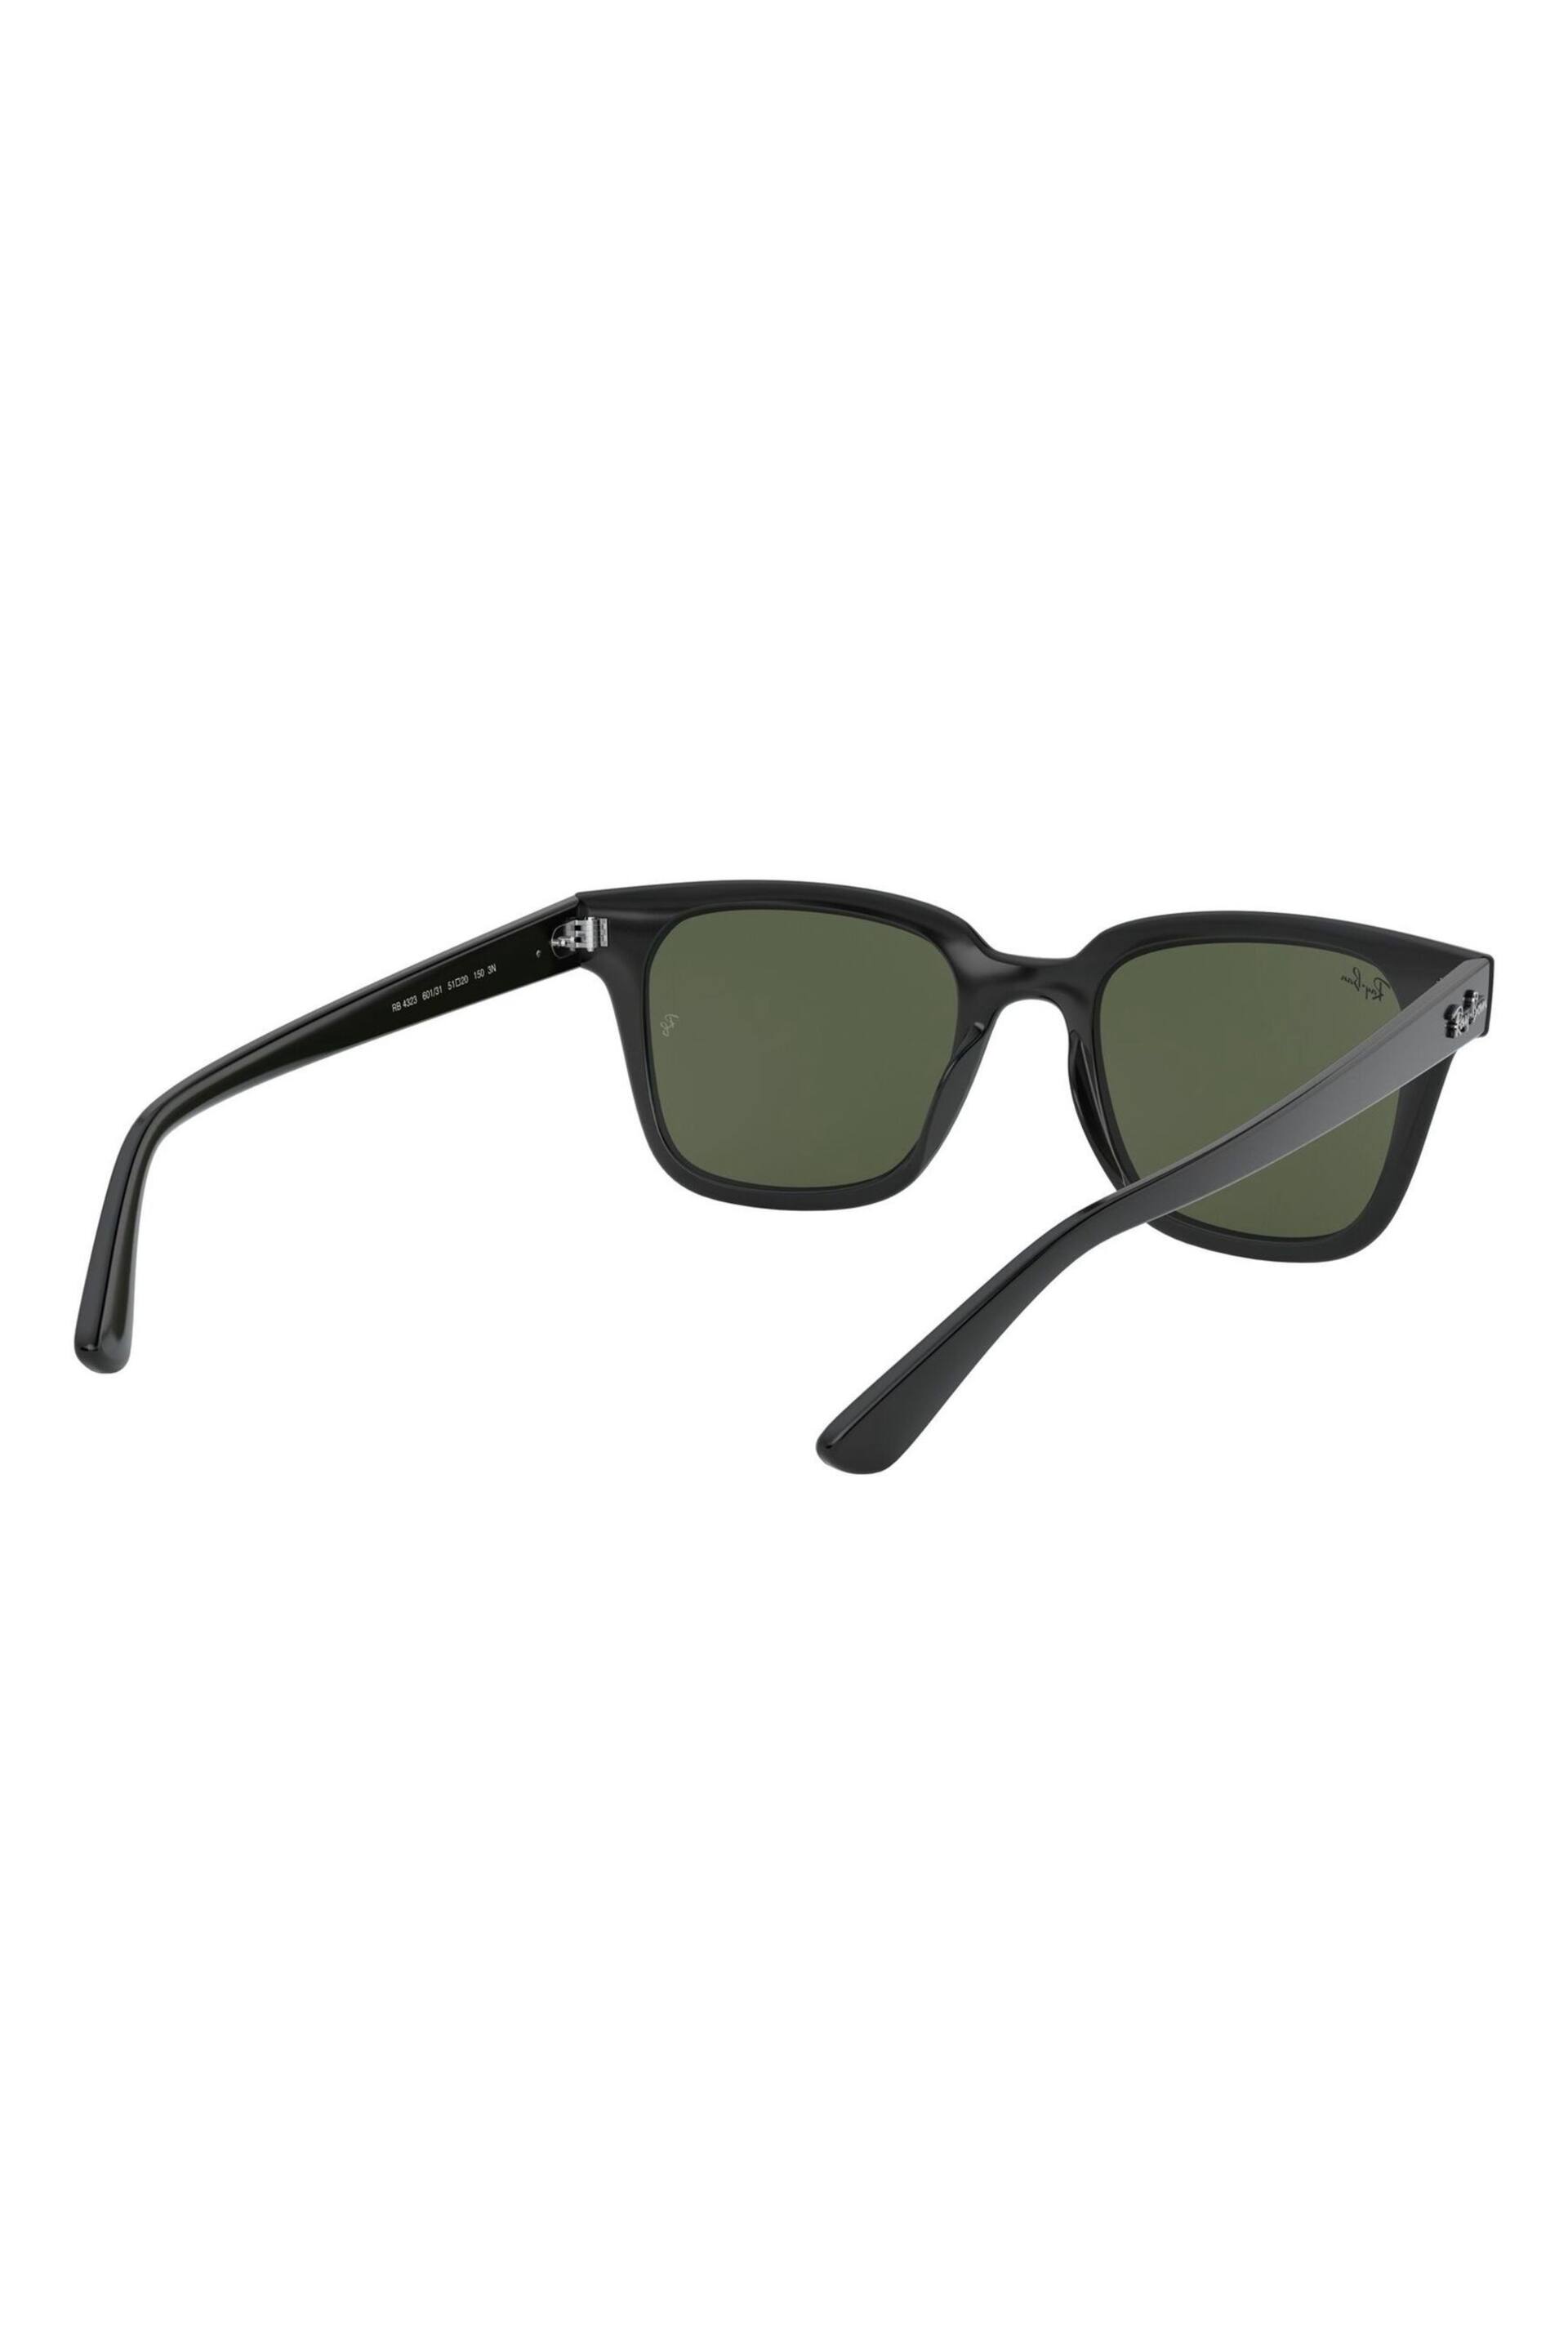 Ray-Ban RB4323 Wayfarer Sunglasses - Image 3 of 12